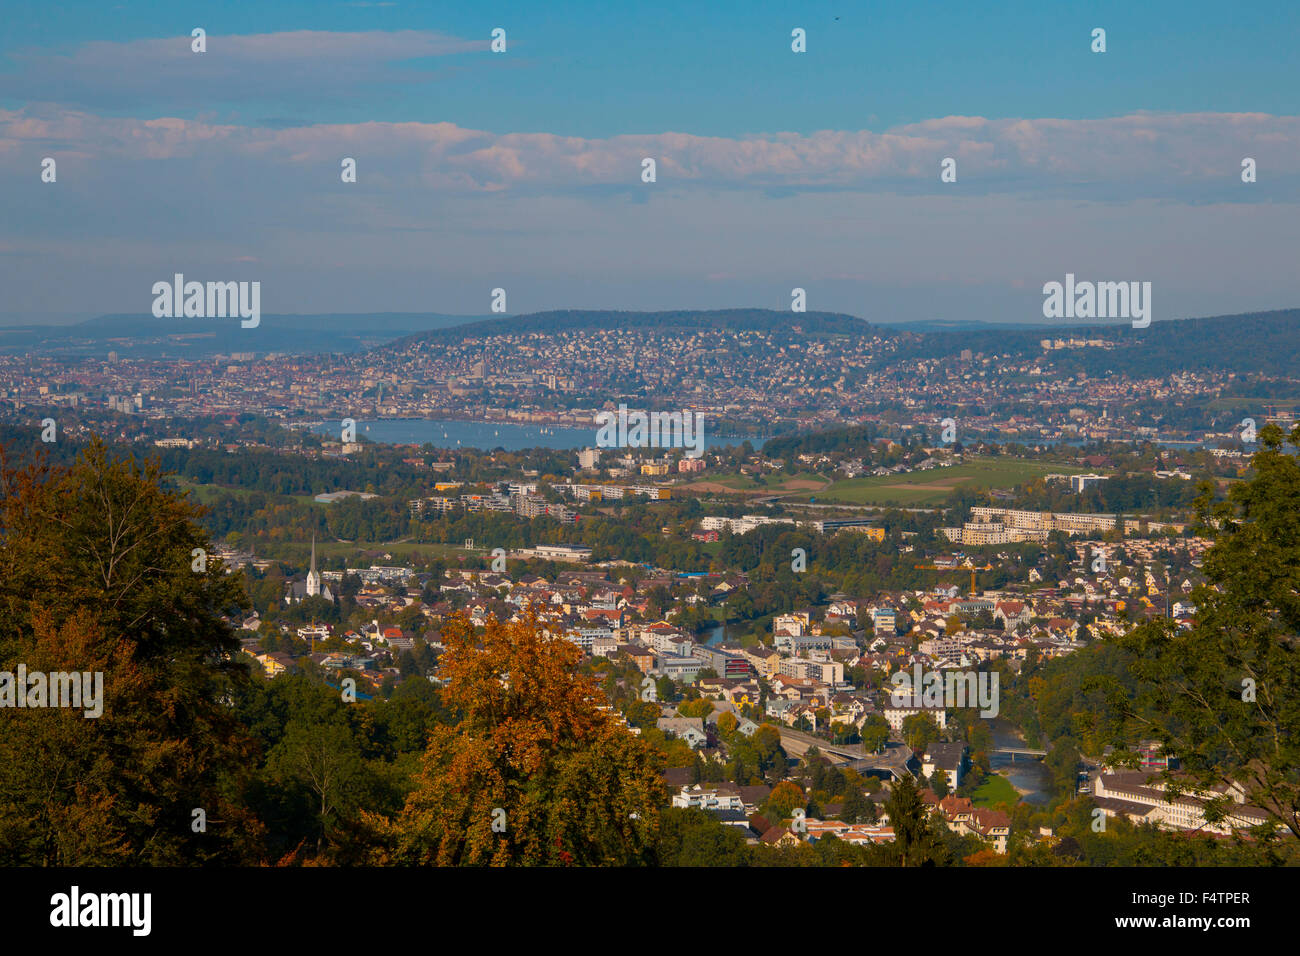 Switzerland, Europe, canton Zurich, Adliswil, town, autumn, Zurich lake, Stock Photo